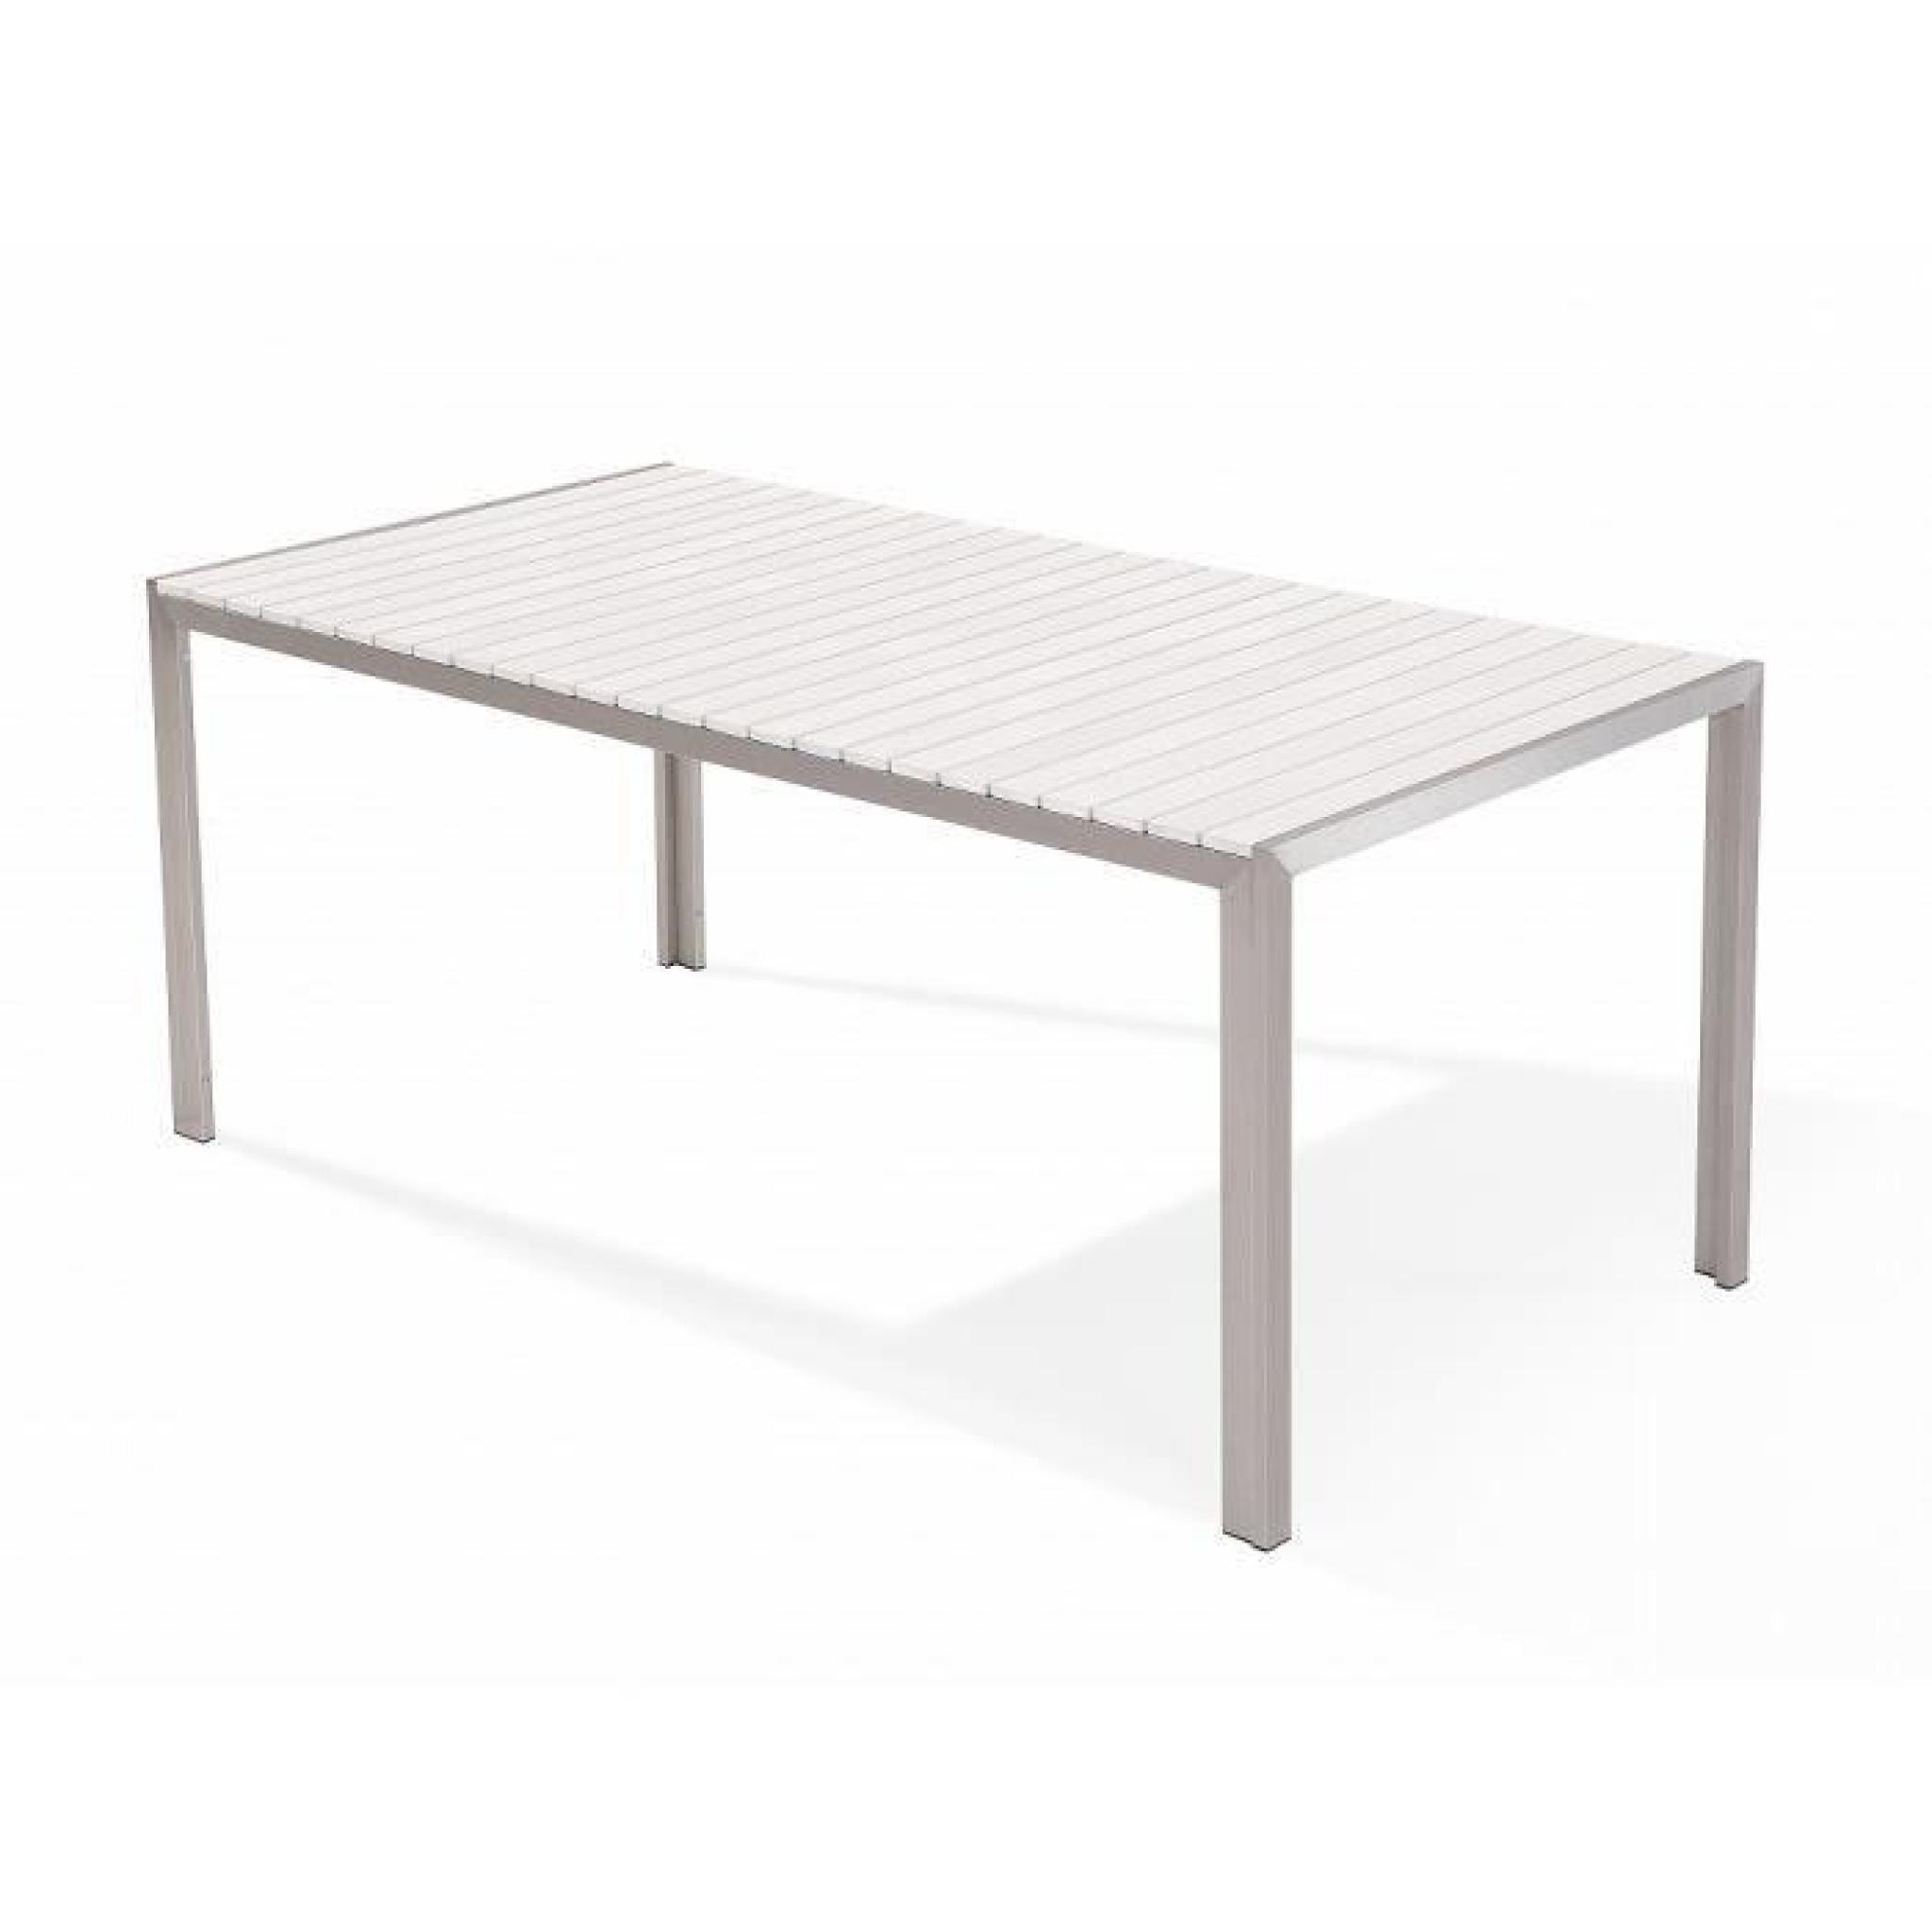 Table de jardin aluminium blanc- plateau en polywood 180 cm et 2 bancs - Nardo pas cher